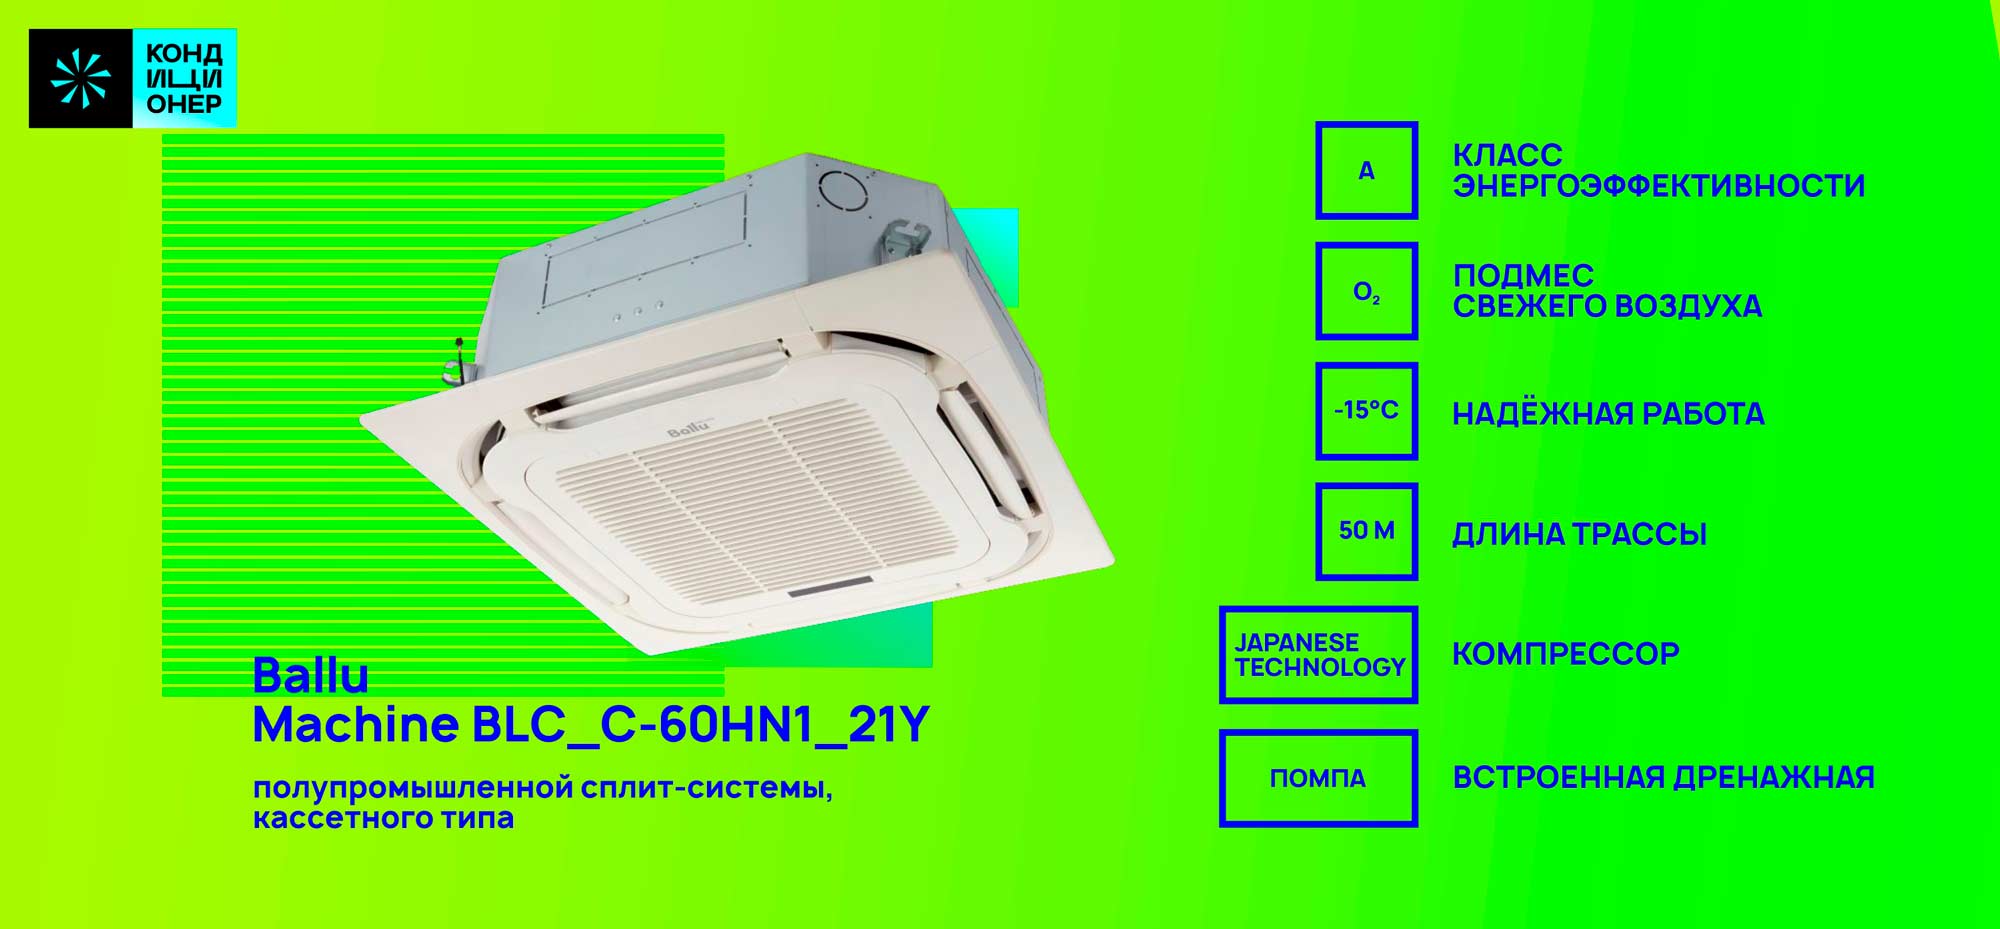 BALLU Machine BLC_C-60HN1_19